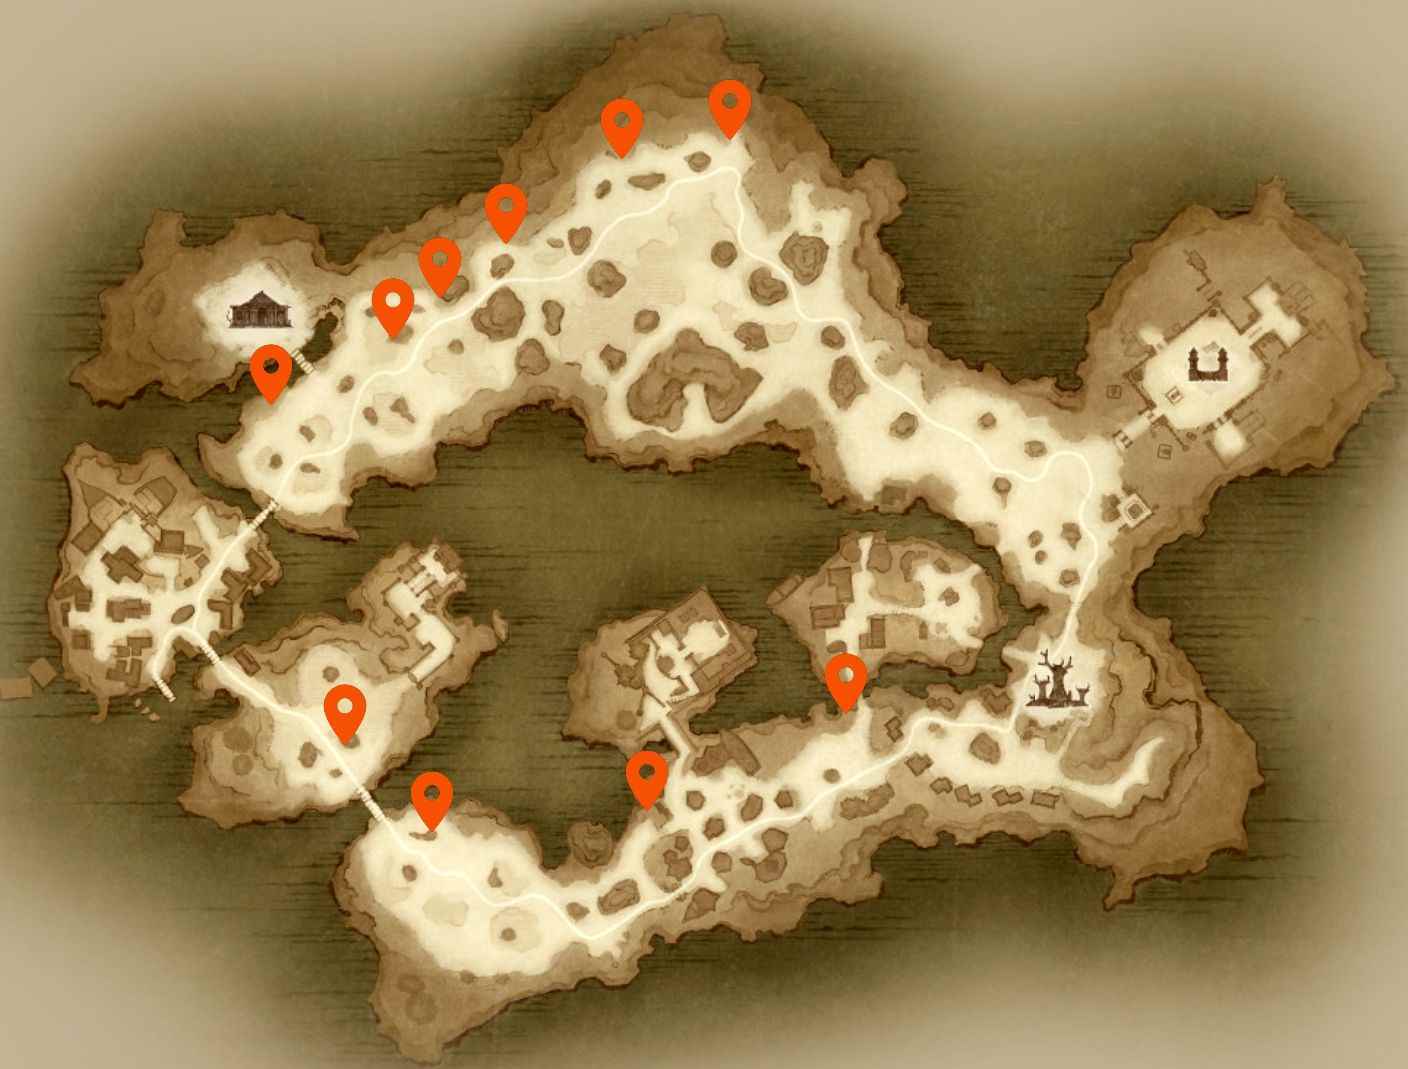 Diablo Immortal Hidden Lairs: Hidden Lairs ile işaretlenmiş, öncelikle haritanın kuzey tarafında kümelenmiş bir Bilefen haritası.